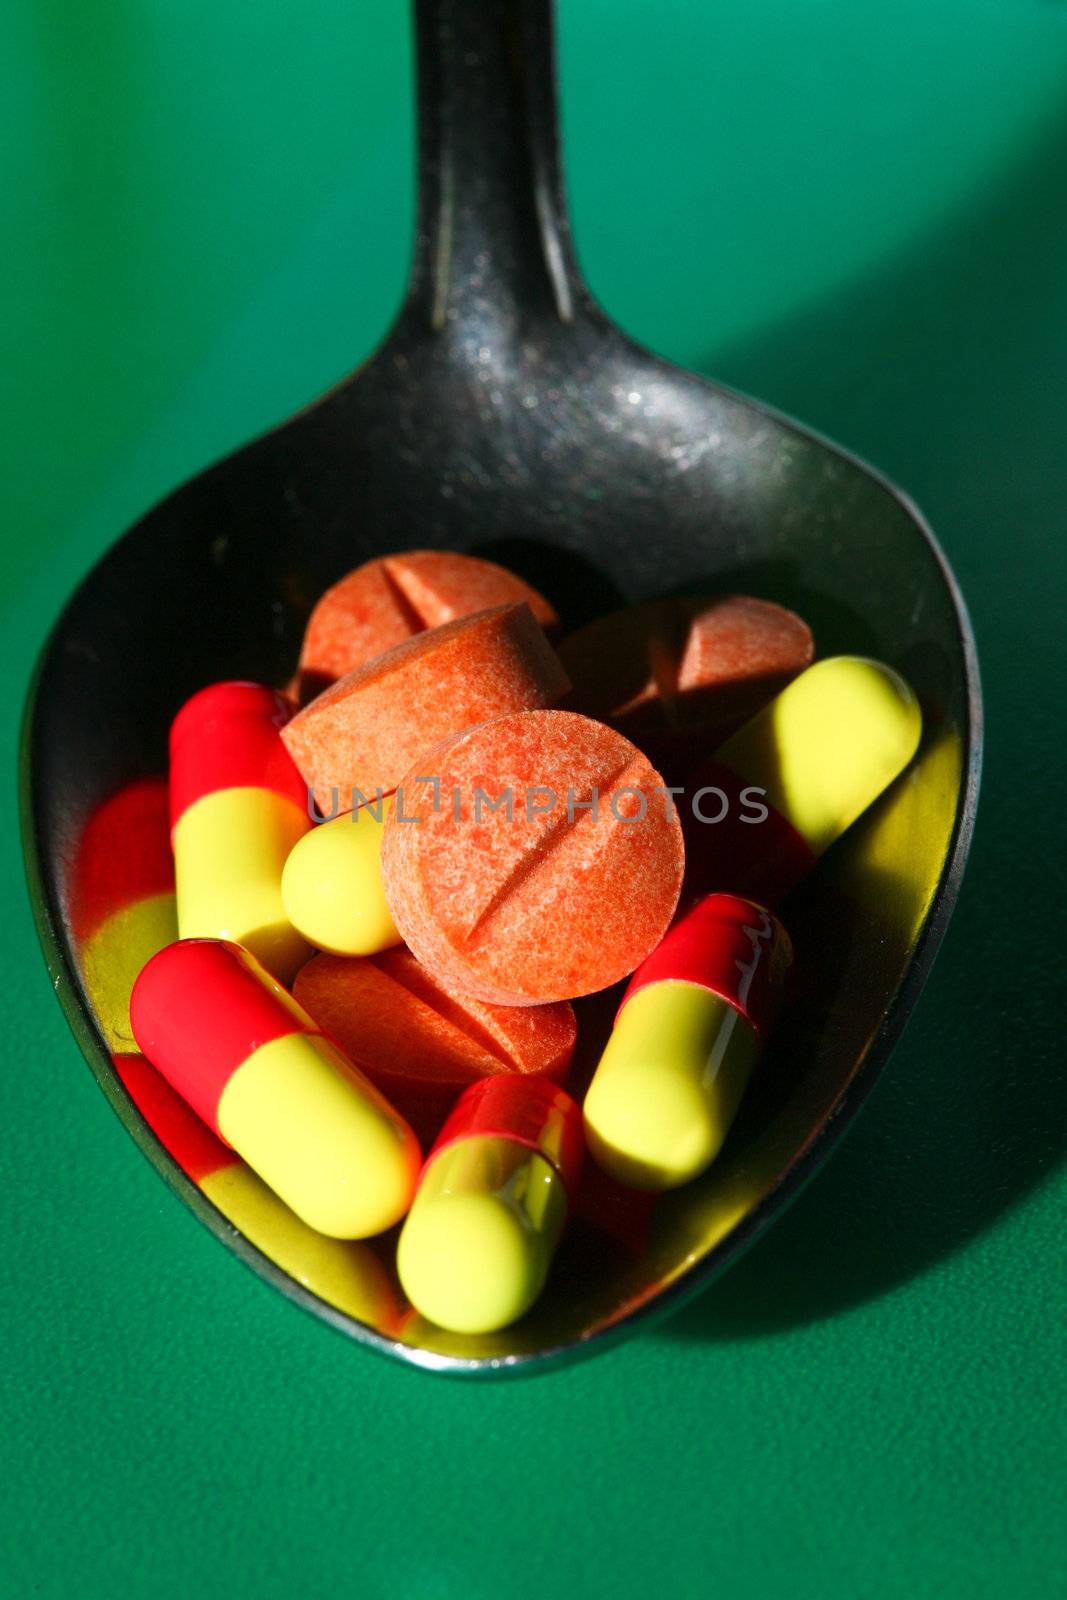 Stock of pills by velkol